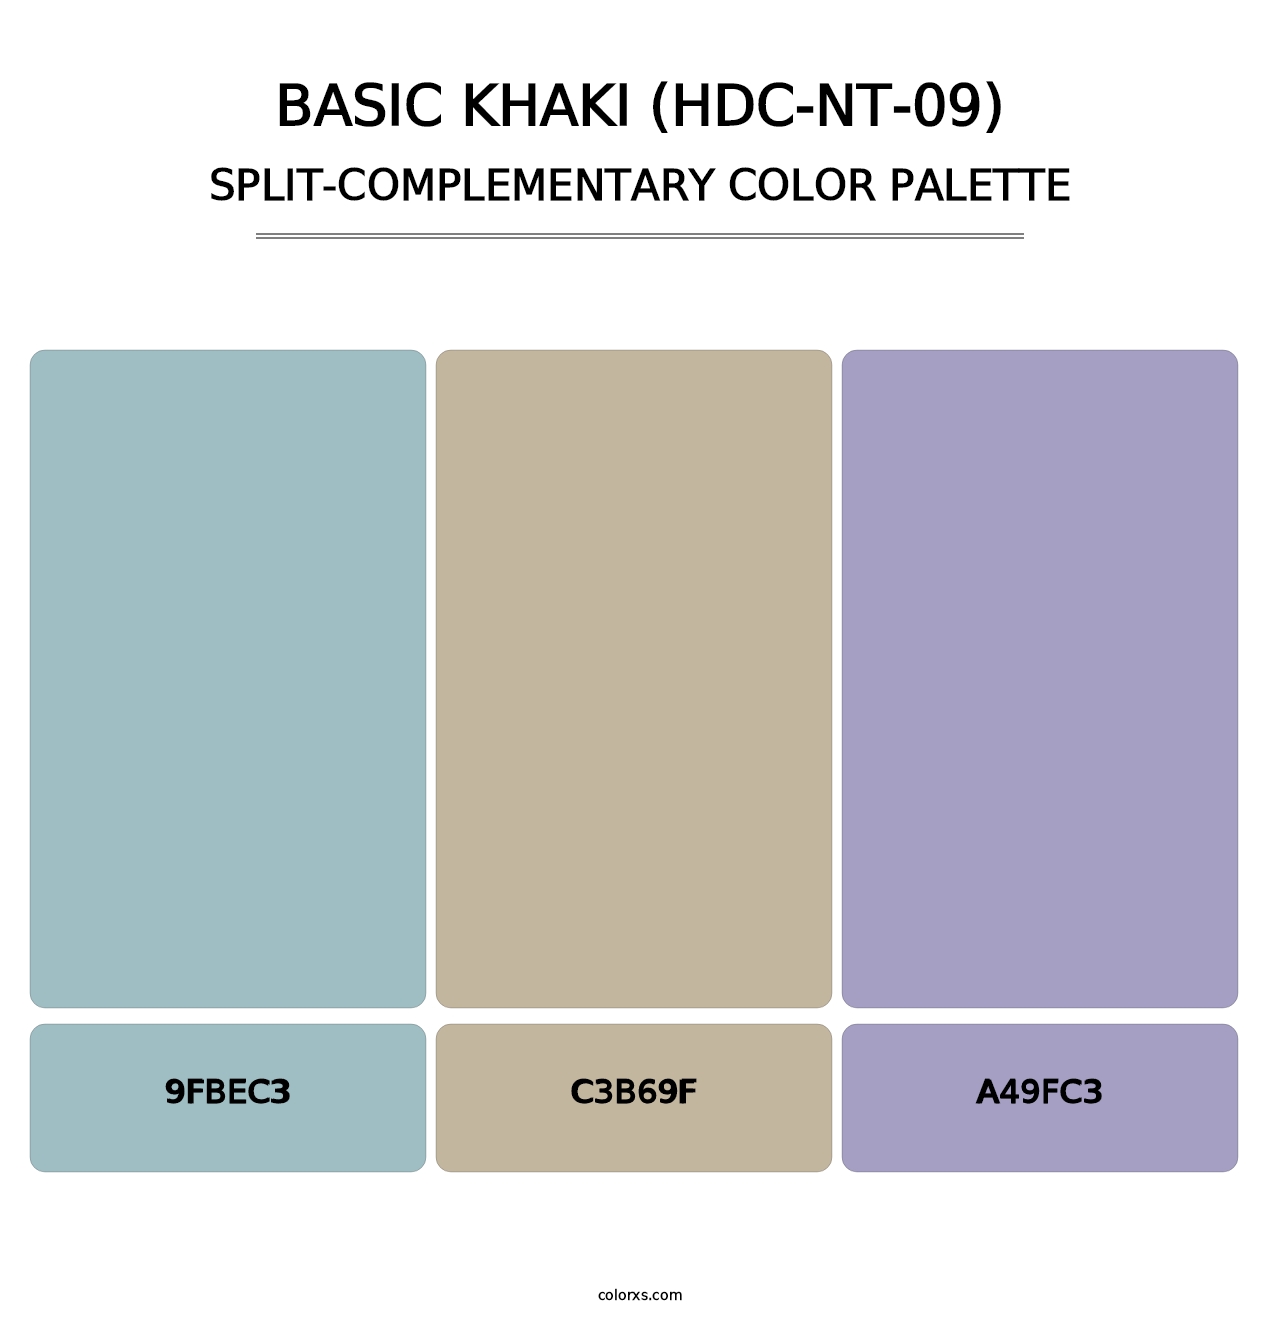 Basic Khaki (HDC-NT-09) - Split-Complementary Color Palette